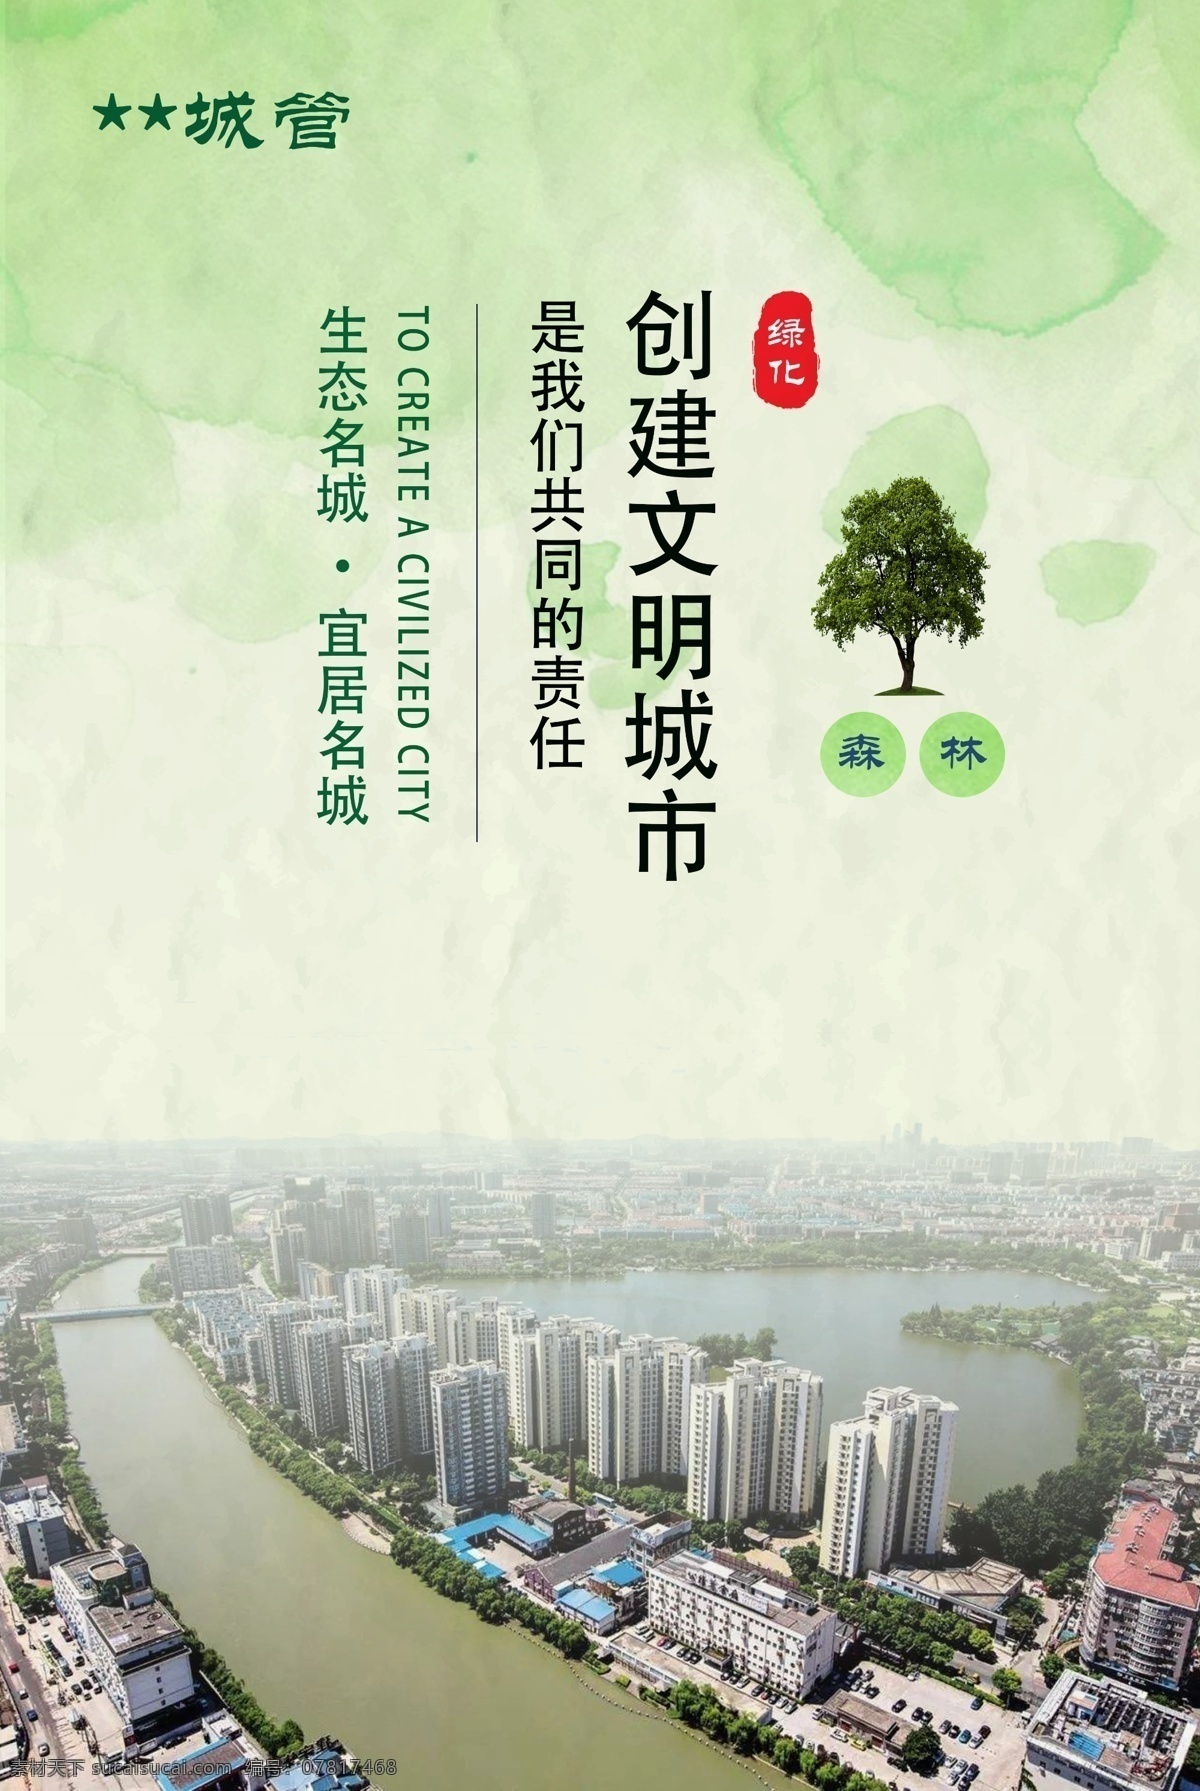 创建 文明 城市 宣传海报 创建文明城市 宜居 绿色 森林 生态 分层